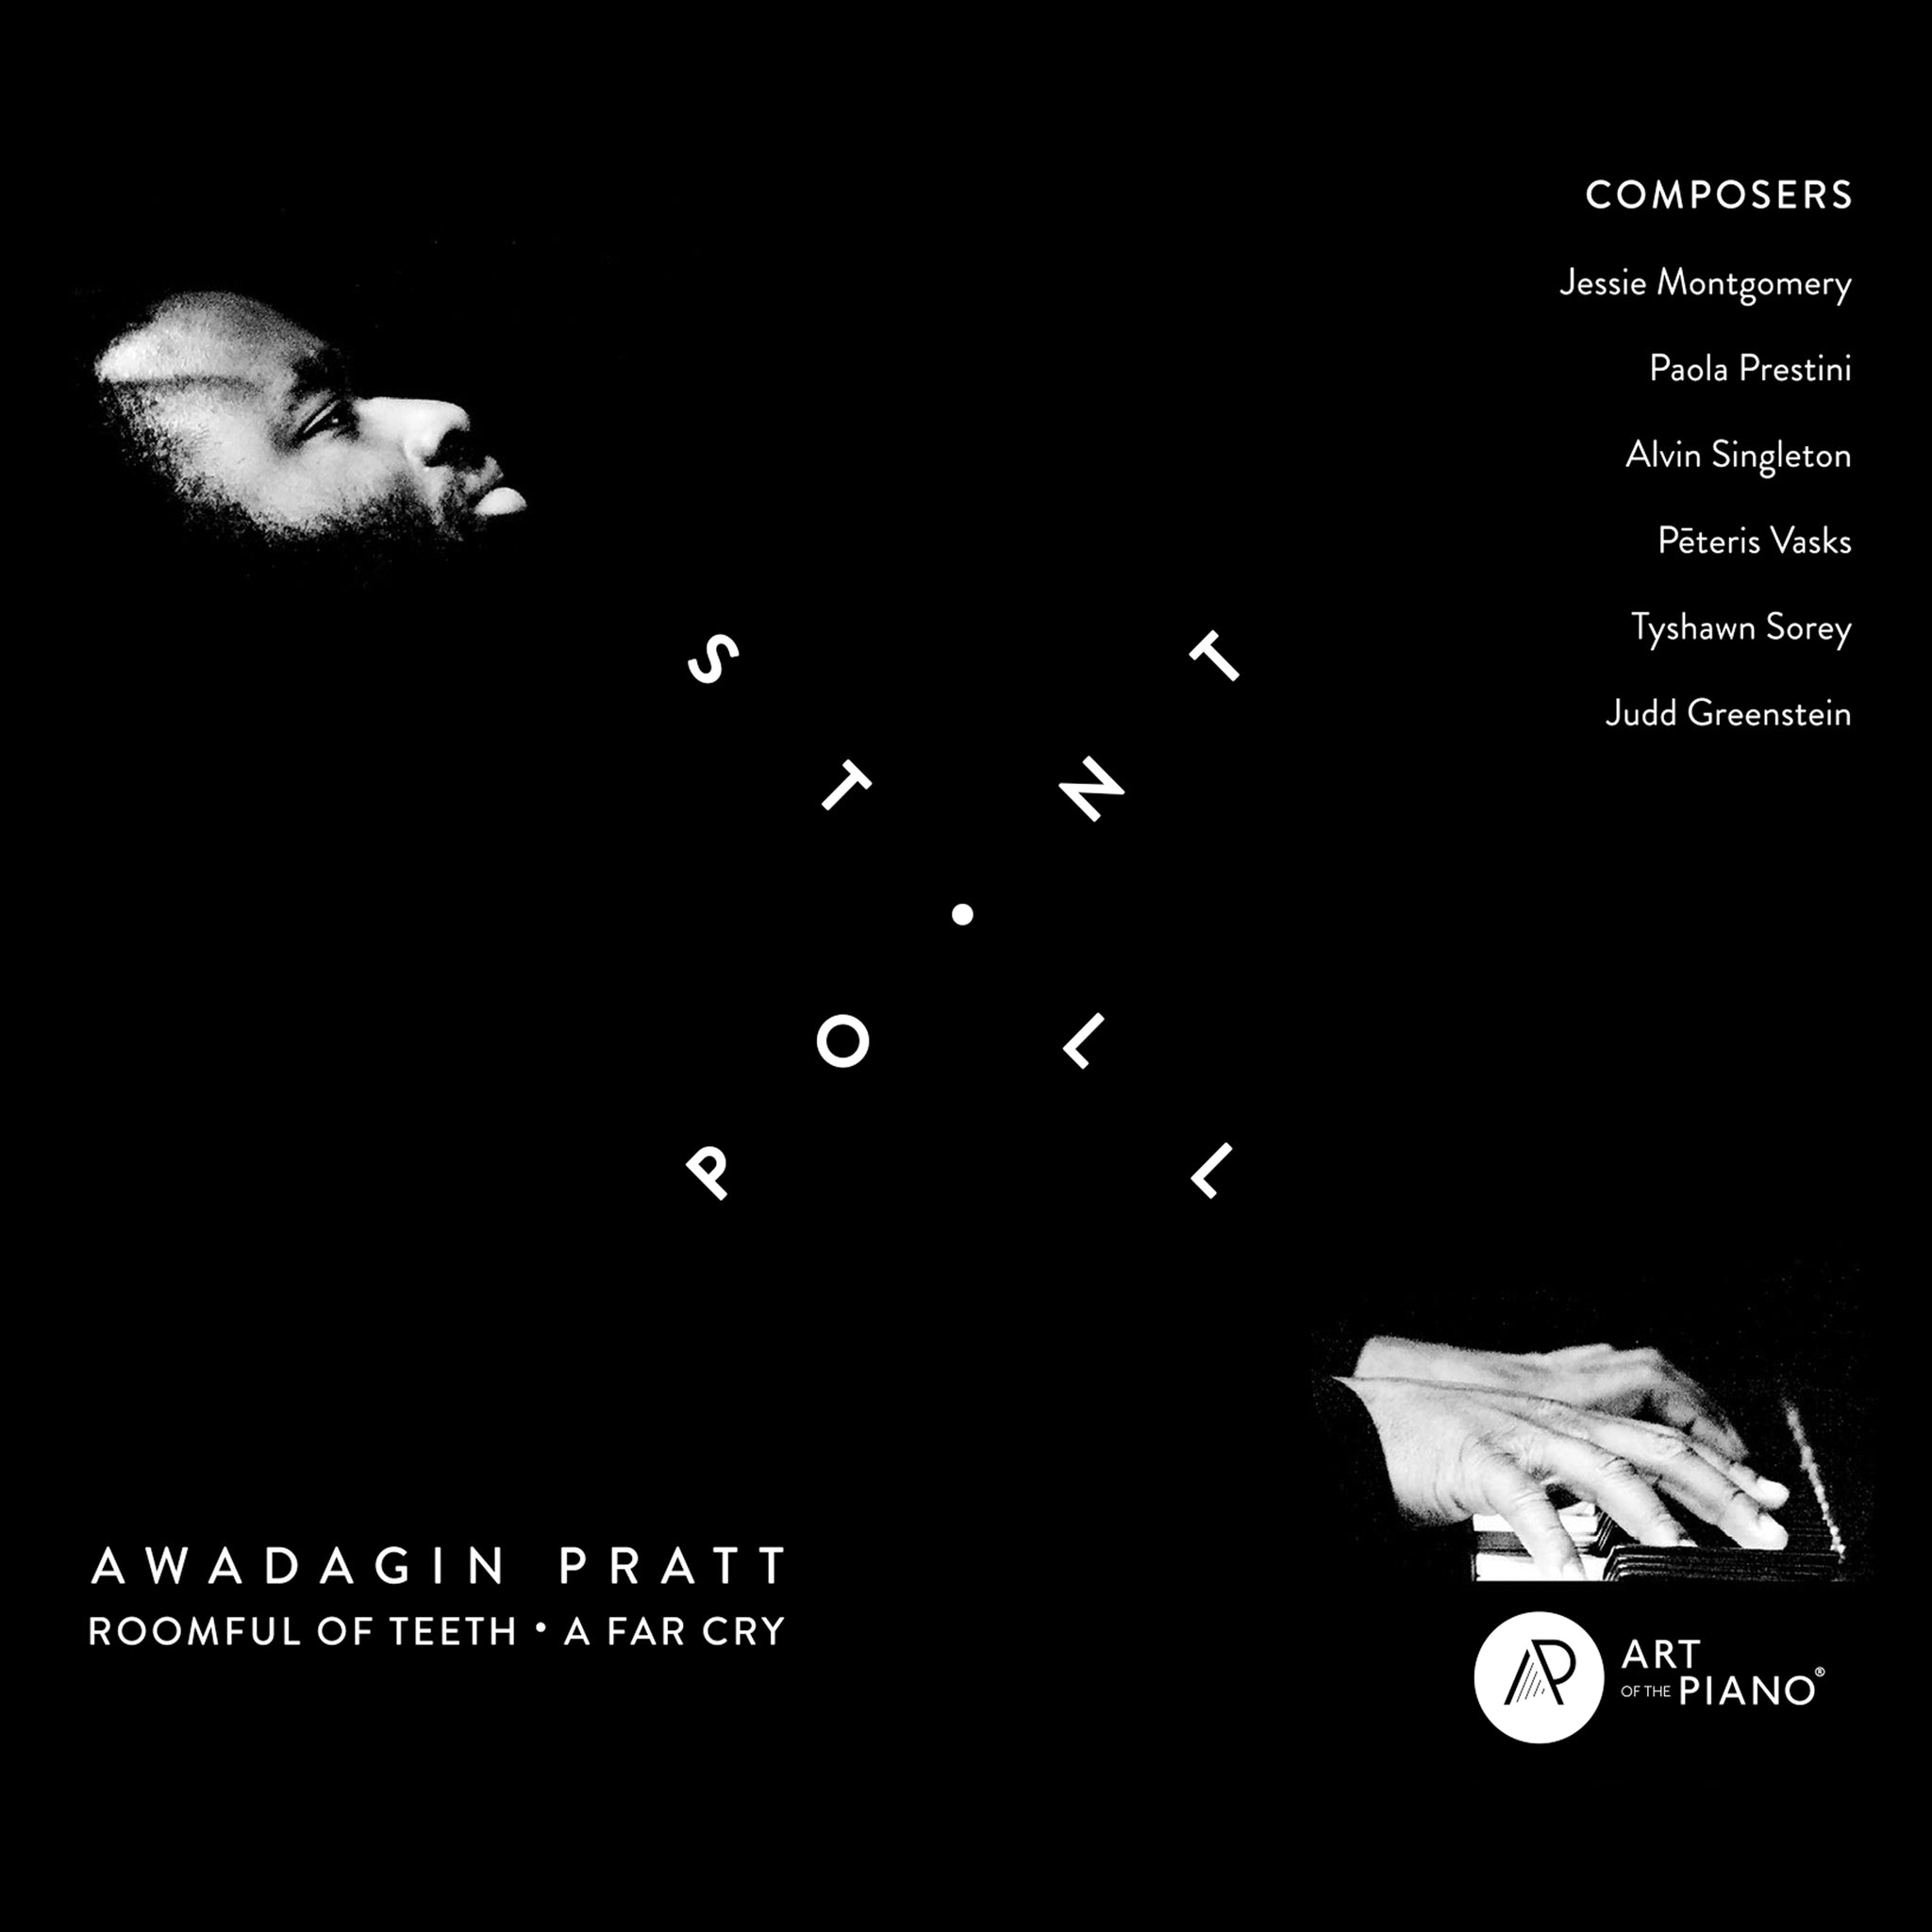 Stillpoint / Awadagin Pratt, Roomful of Teeth, A Far Cry